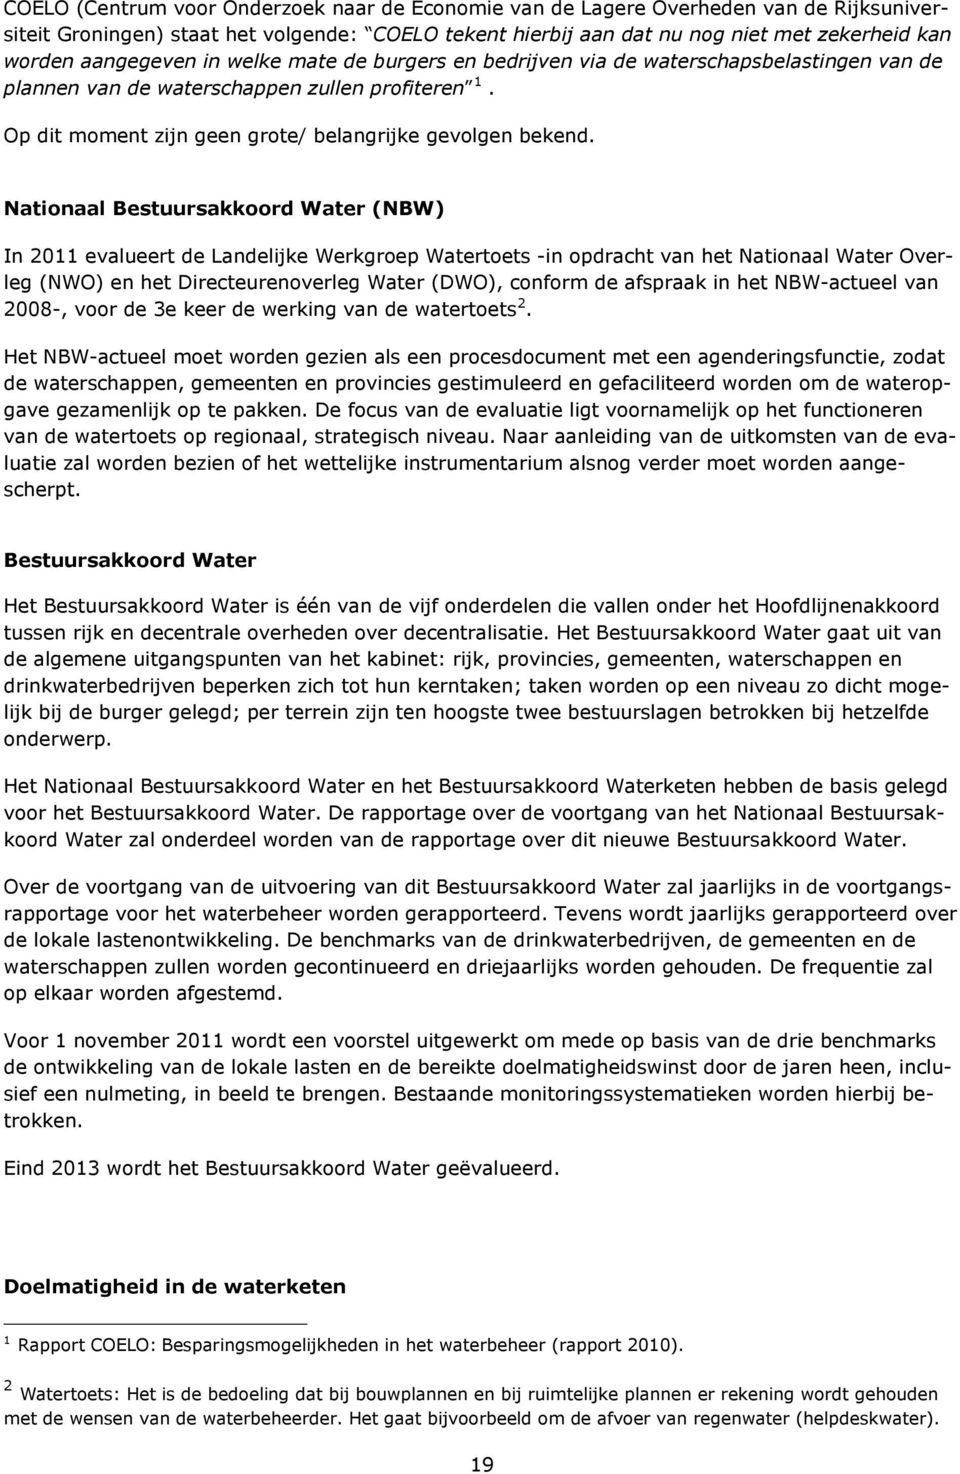 Nationaal Bestuursakkoord Water (NBW) In 2011 evalueert de Landelijke Werkgroep Watertoets -in opdracht van het Nationaal Water Overleg (NWO) en het Directeurenoverleg Water (DWO), conform de